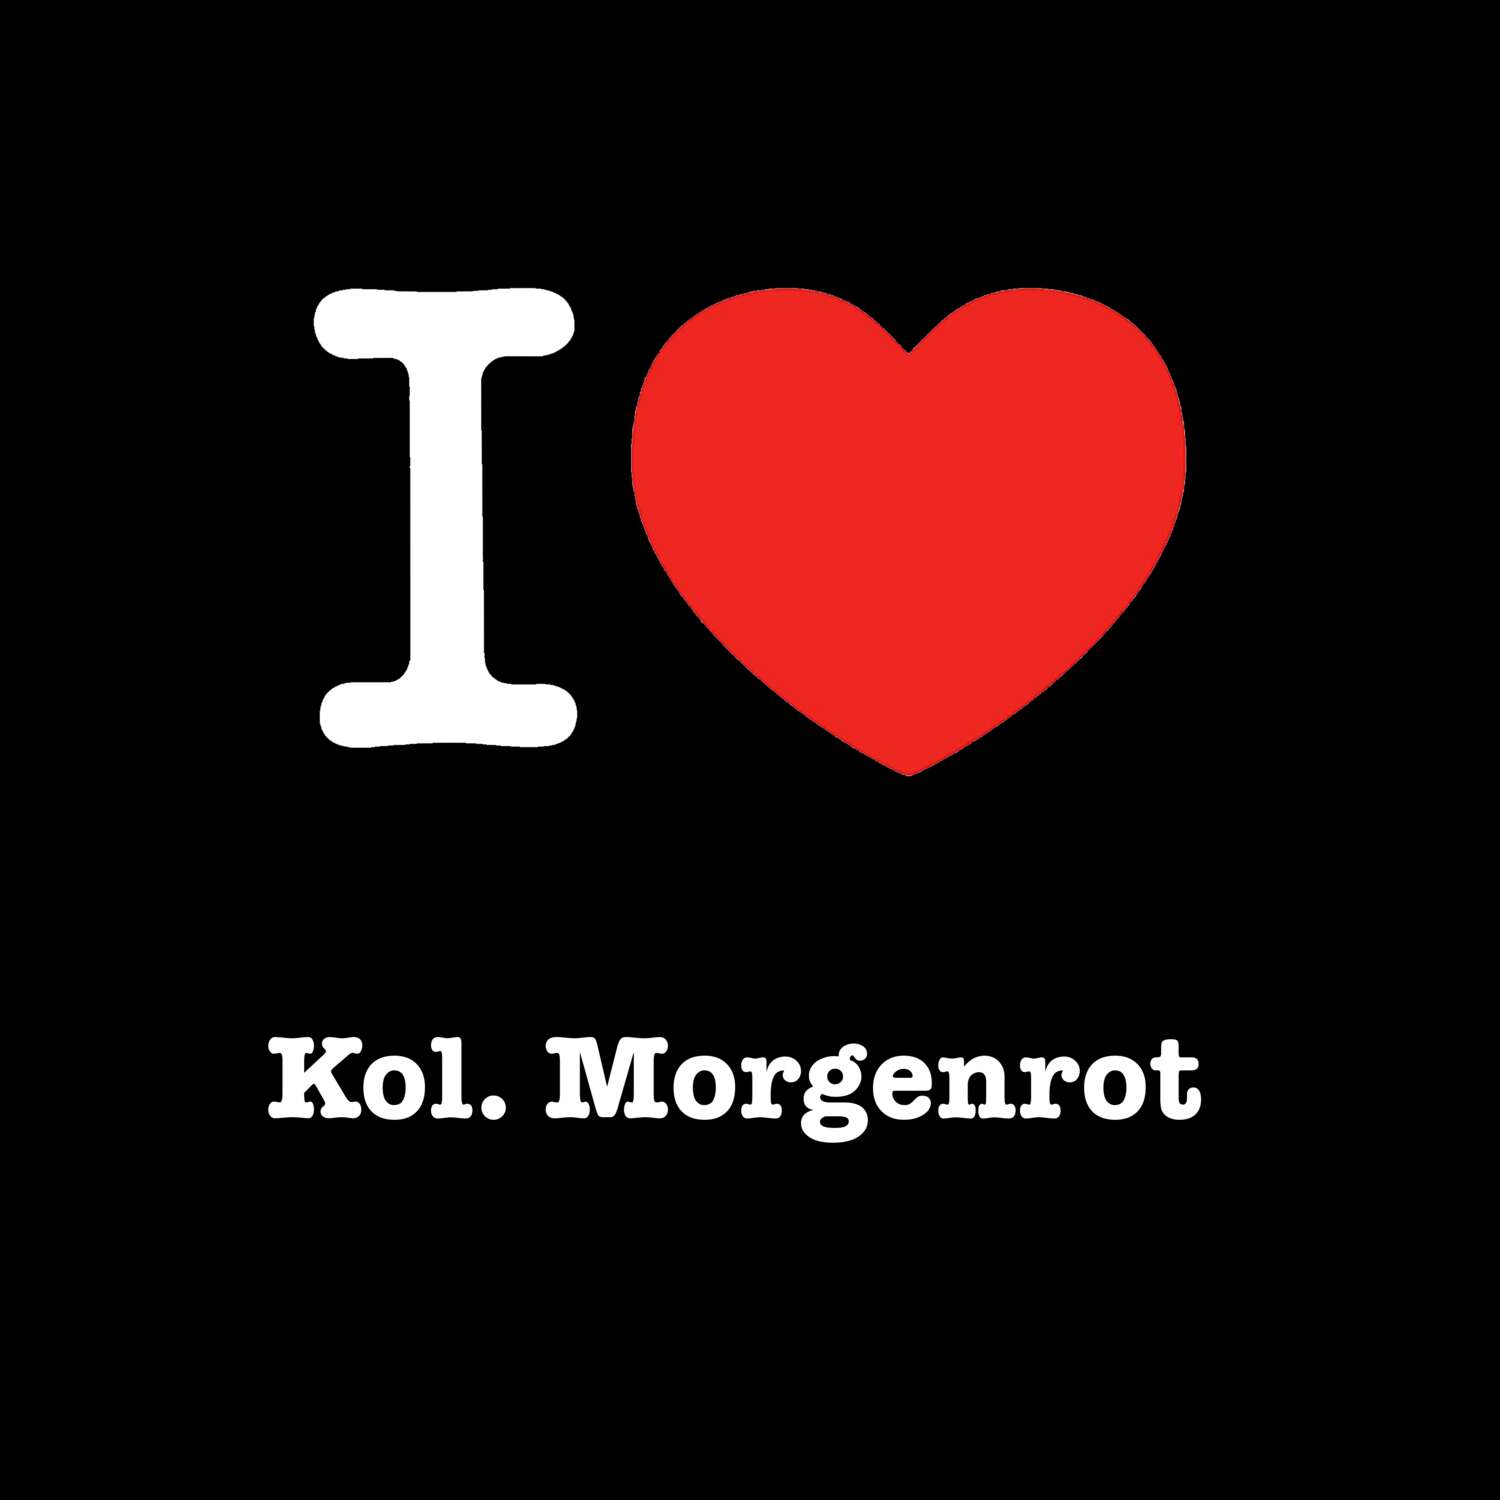 Kol. Morgenrot T-Shirt »I love«